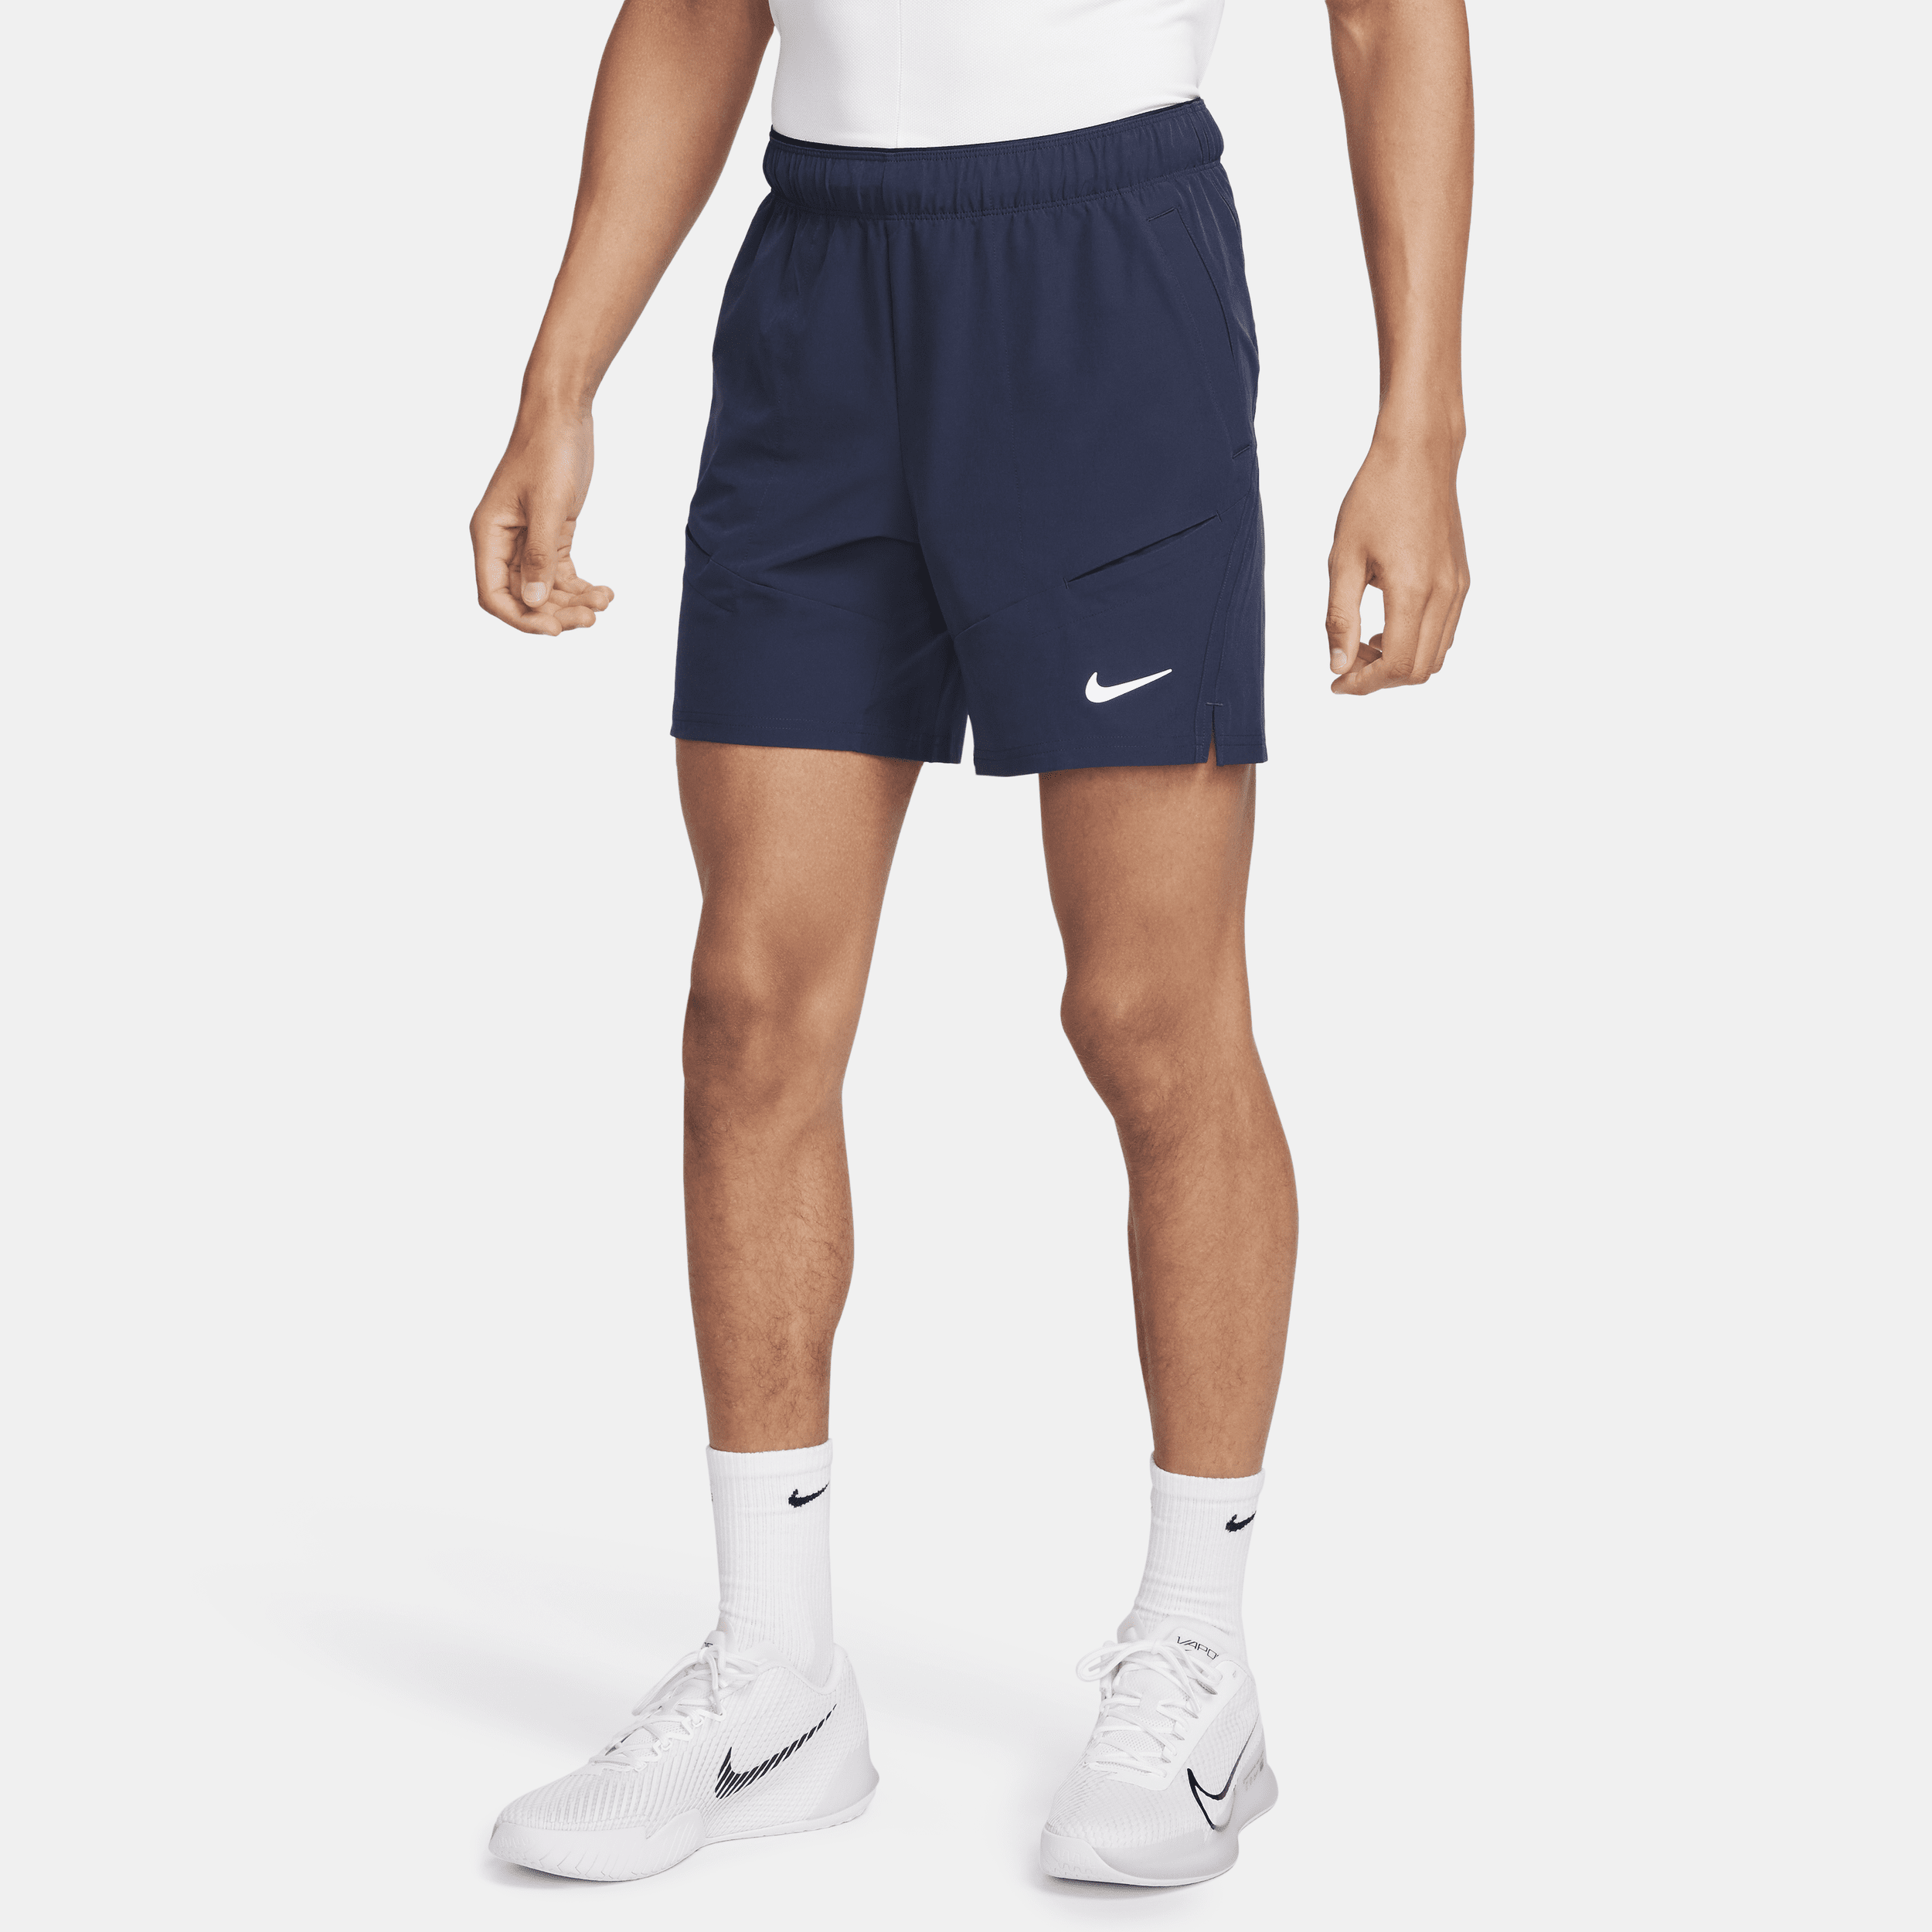 NikeCourt Advantage Dri-FIT tennisshorts voor heren (18 cm) - Blauw